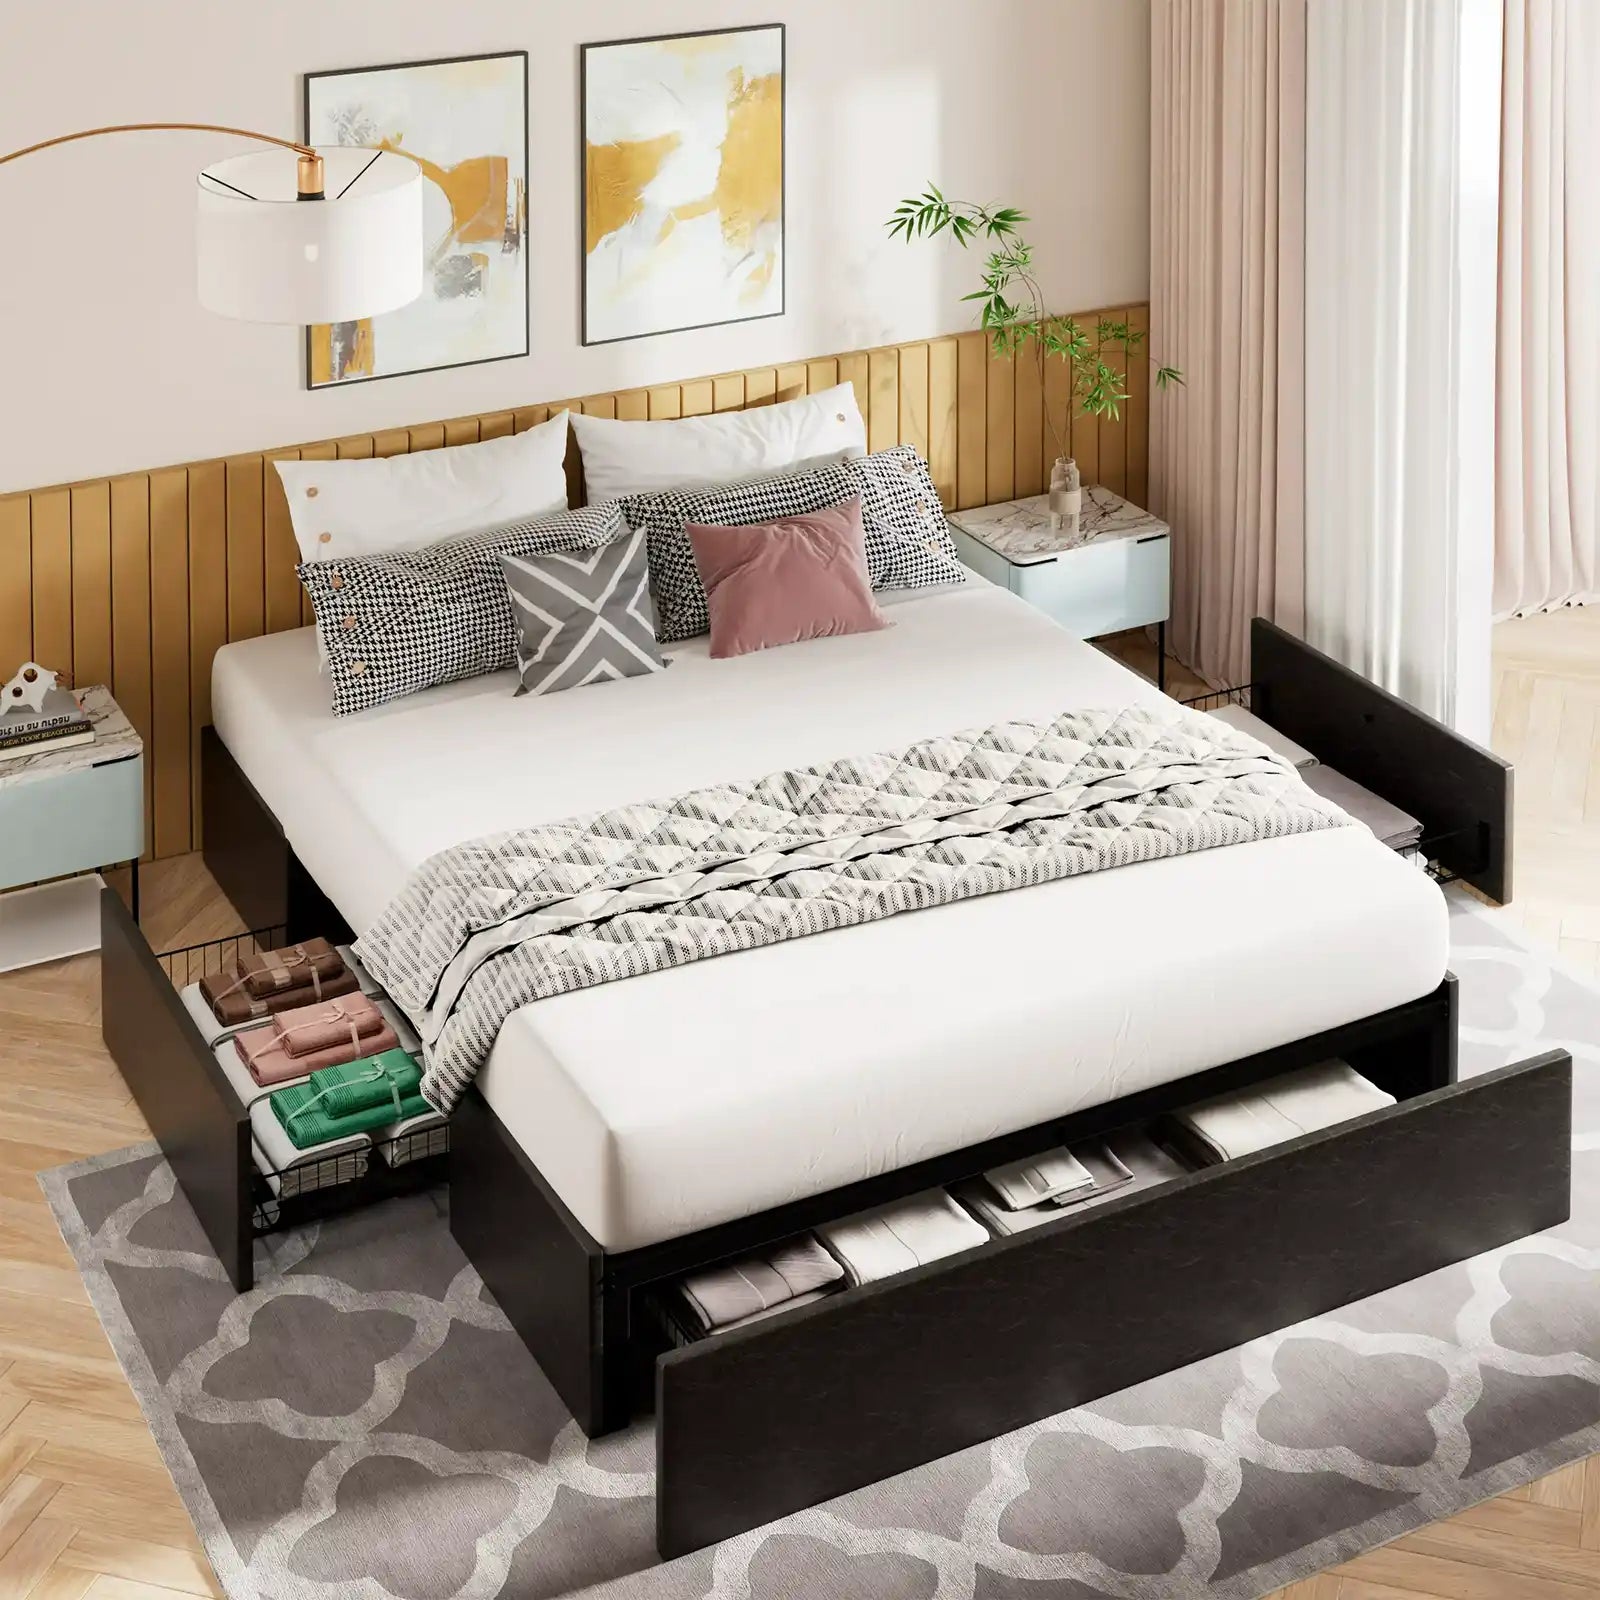 Estructura de cama con plataforma tapizada, 3 cajones de almacenamiento y listones de madera, gris oscuro 